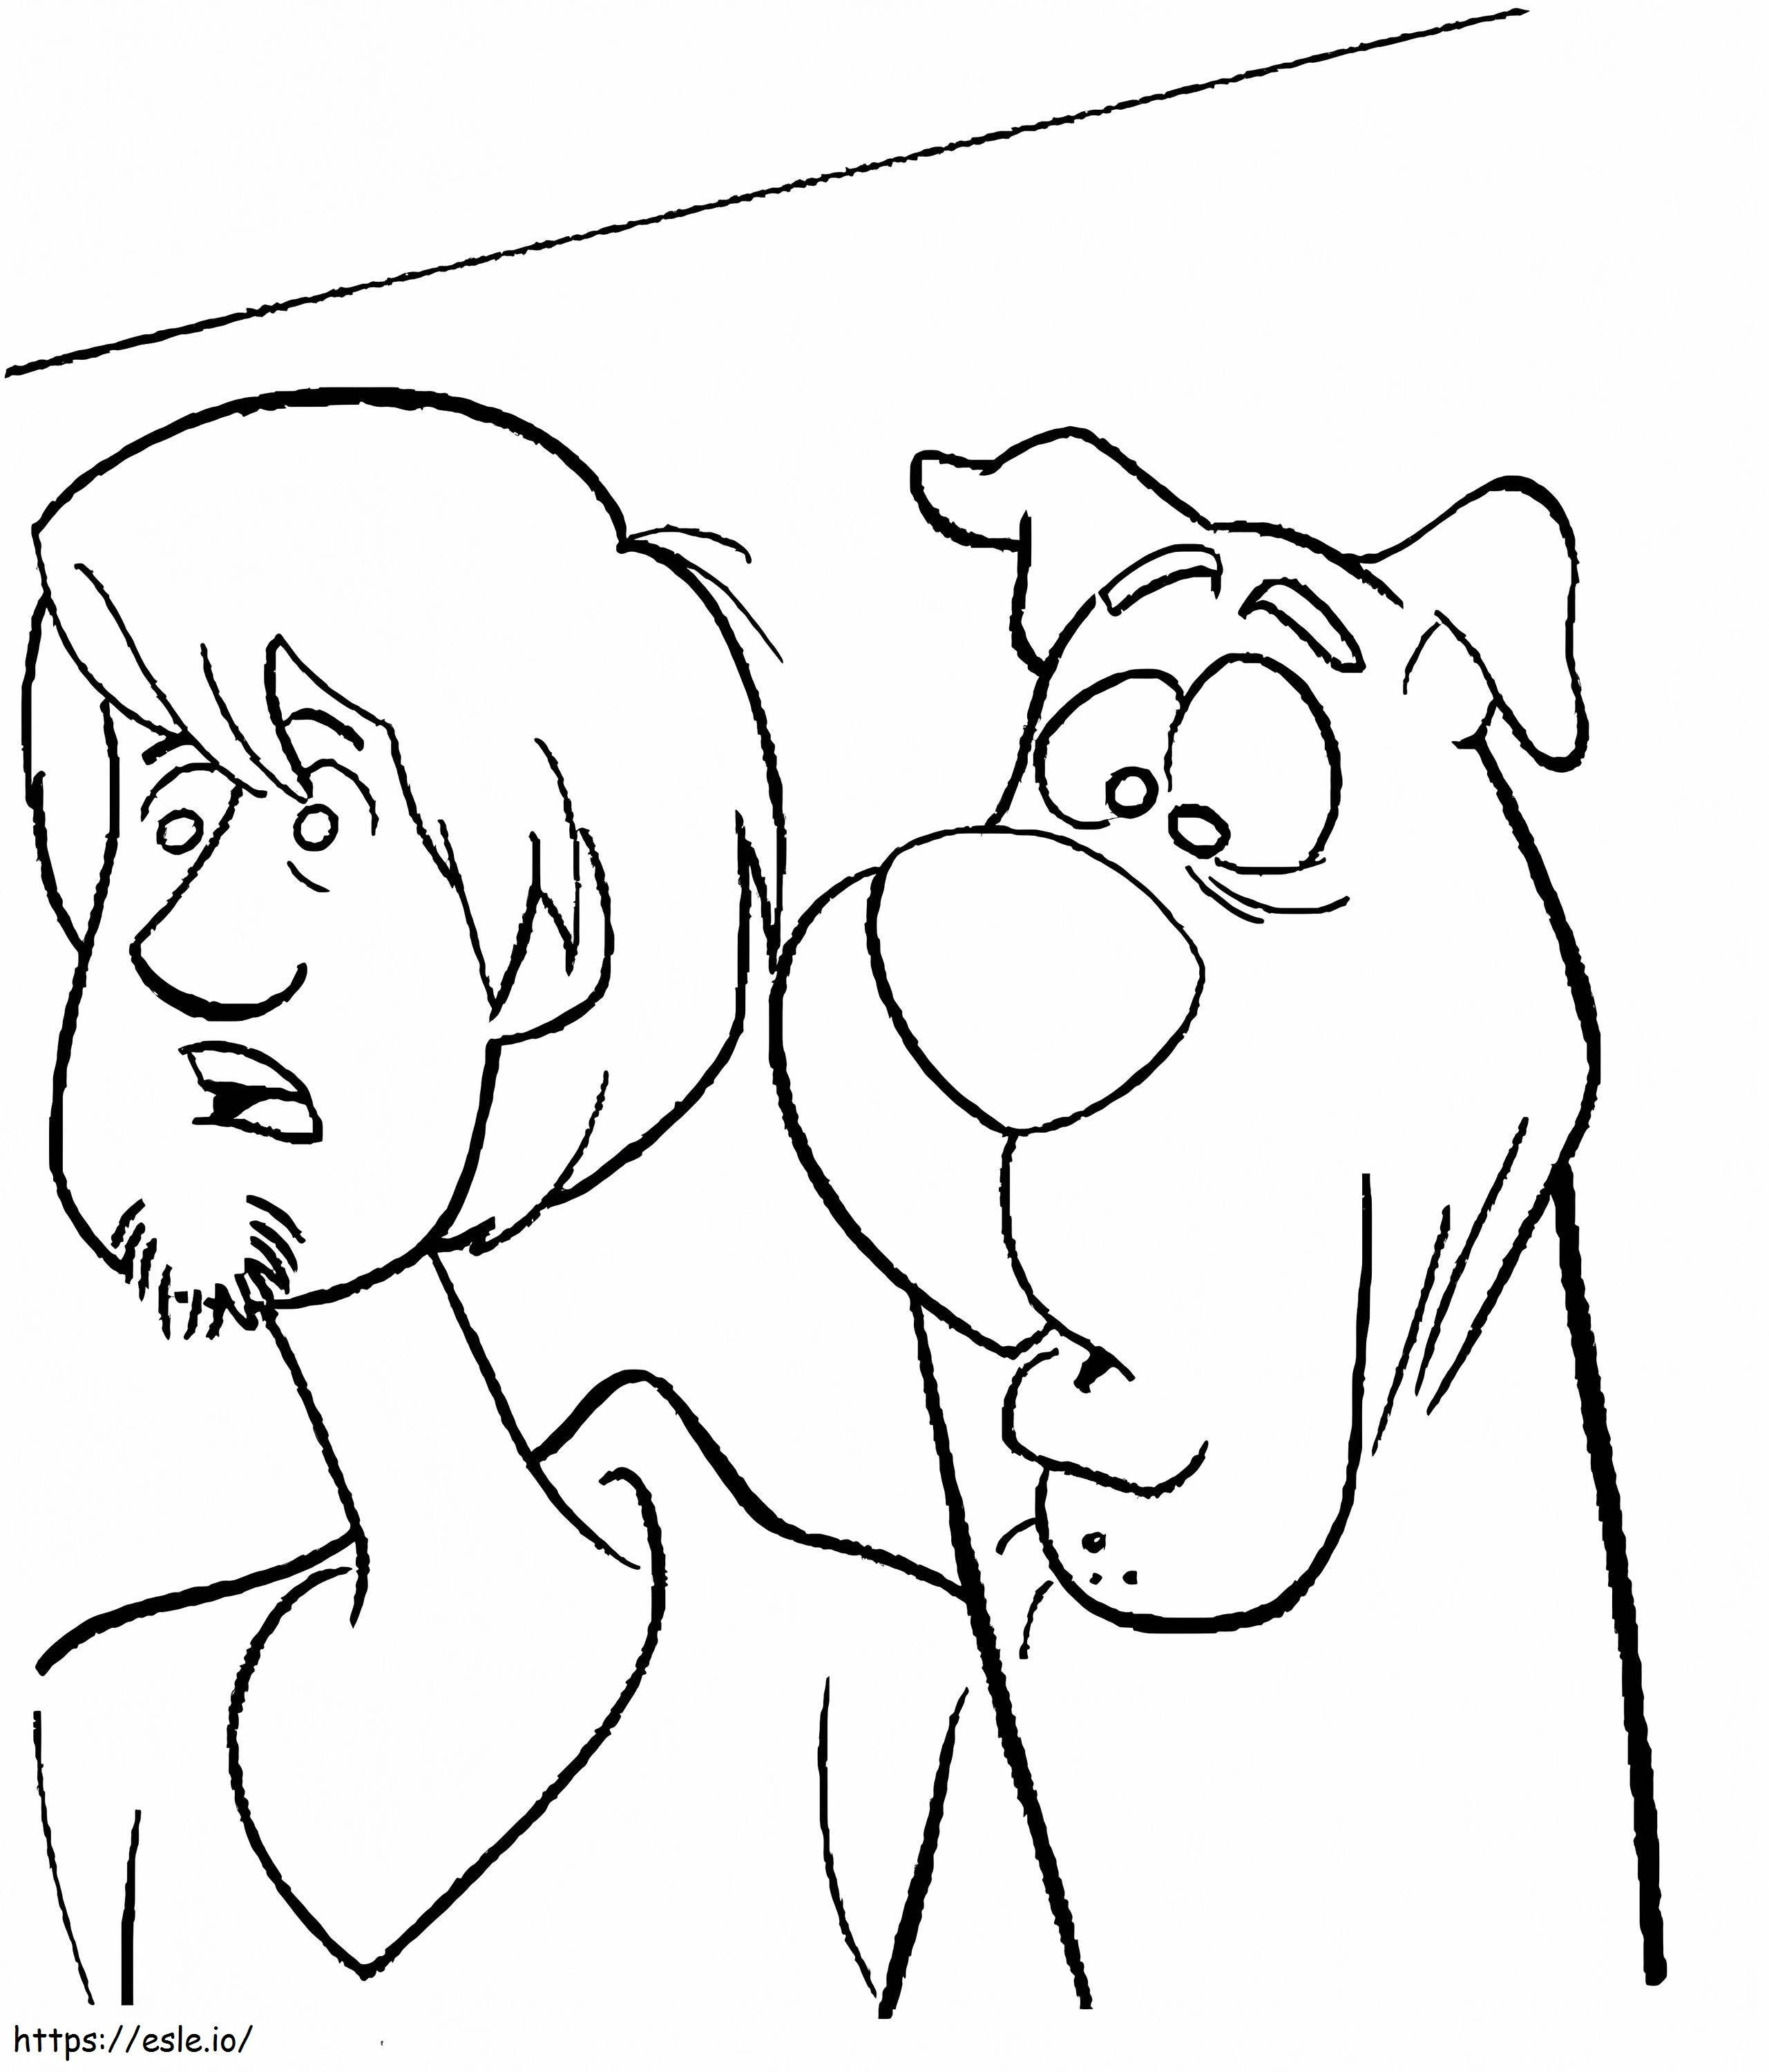 Peludo e Scooby Doo Engraçado para colorir